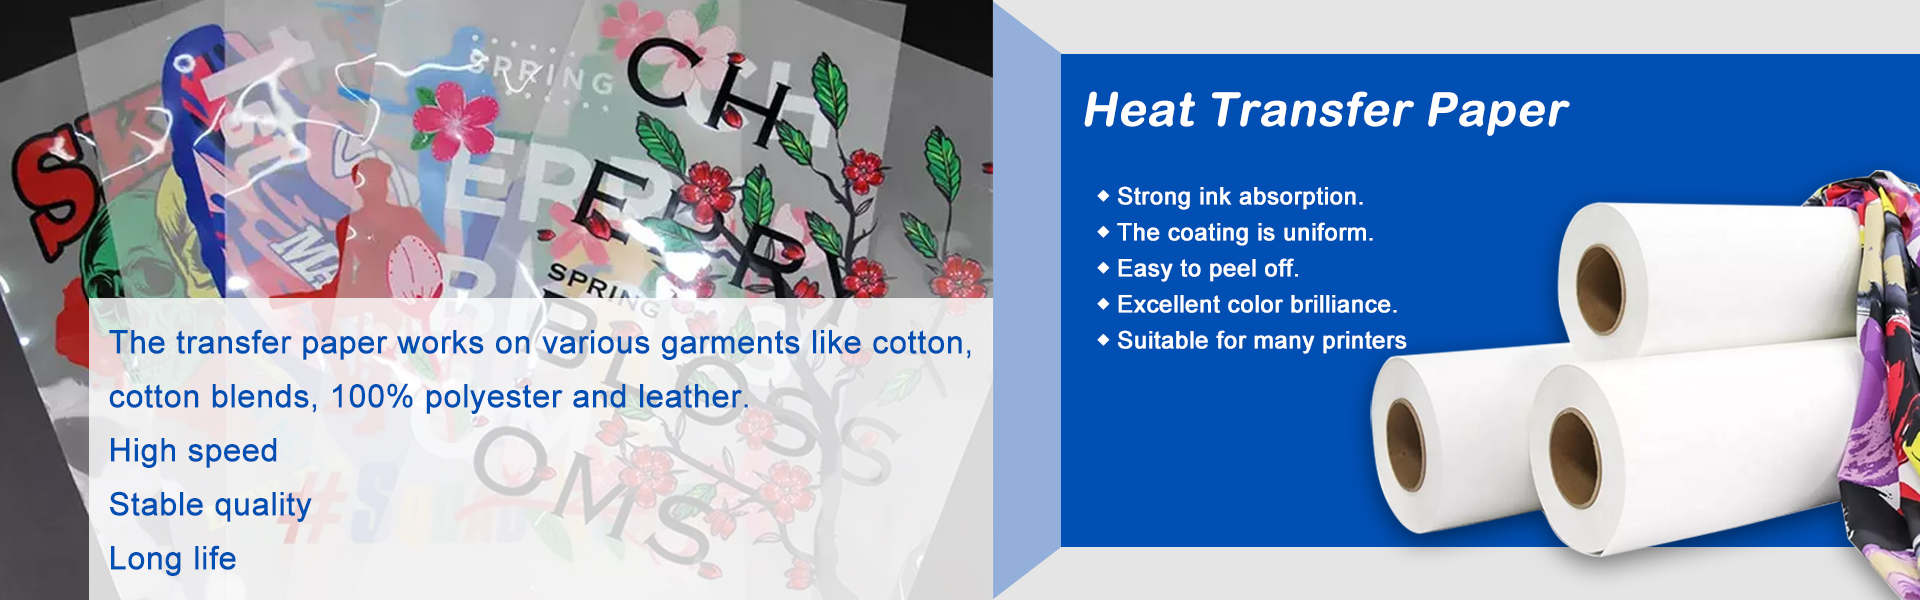 Χαρτί μεταφοράς θερμότητας, χαρτί εξάχνωσης, χαρτί ψηφιακού εκτυπωτή,Suzhou Huarong Paper Products Co., Ltd